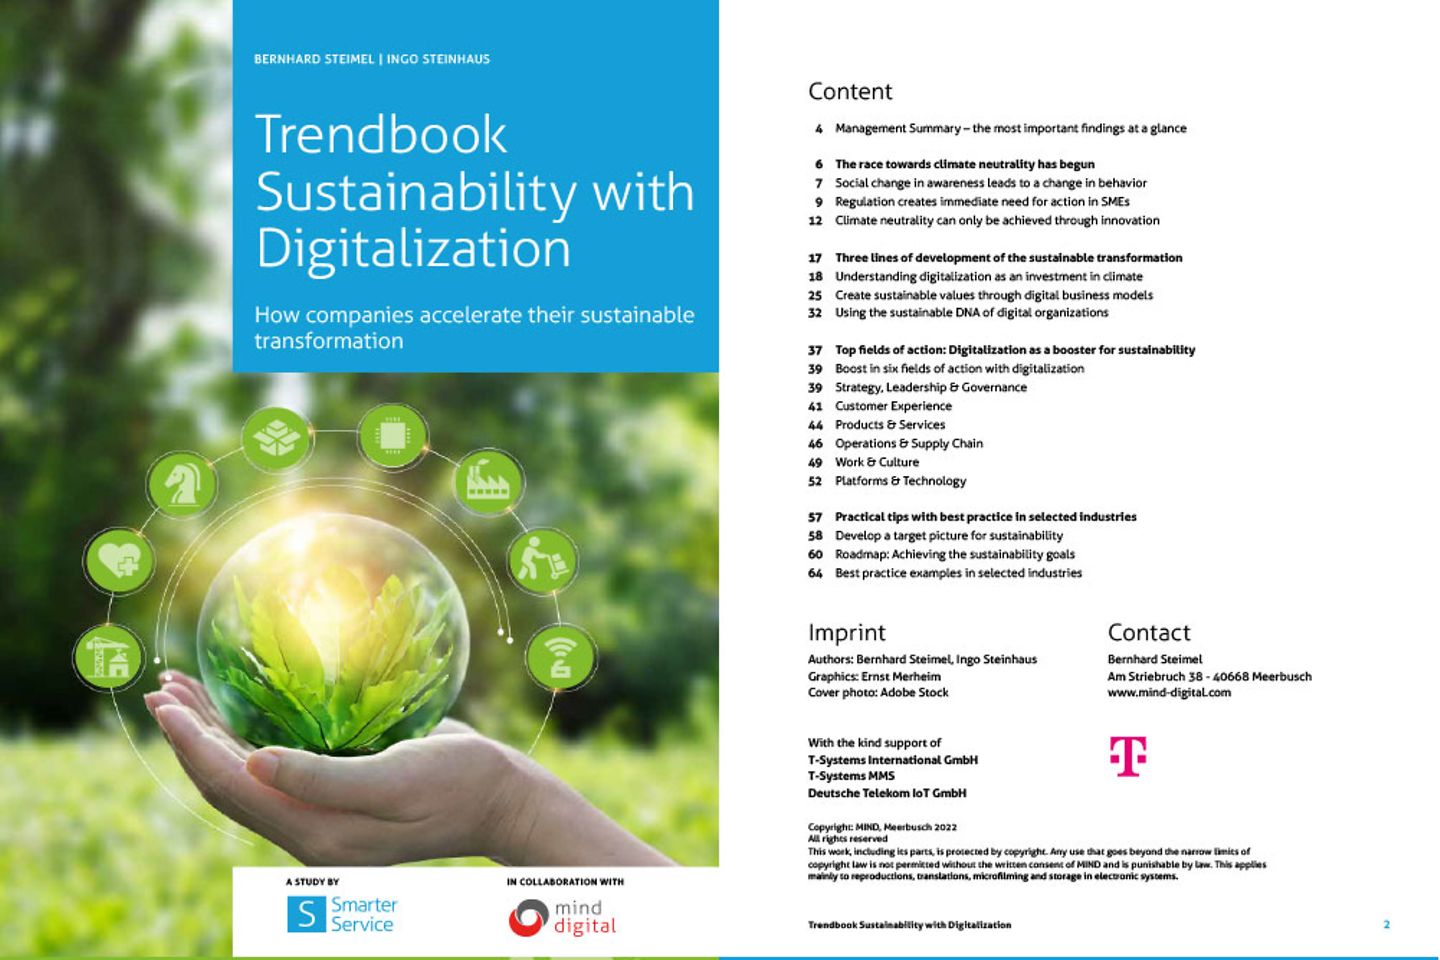 Couverture et deuxième page du Trend Book en tant que capture d’écran : La durabilité avec la digitalisation